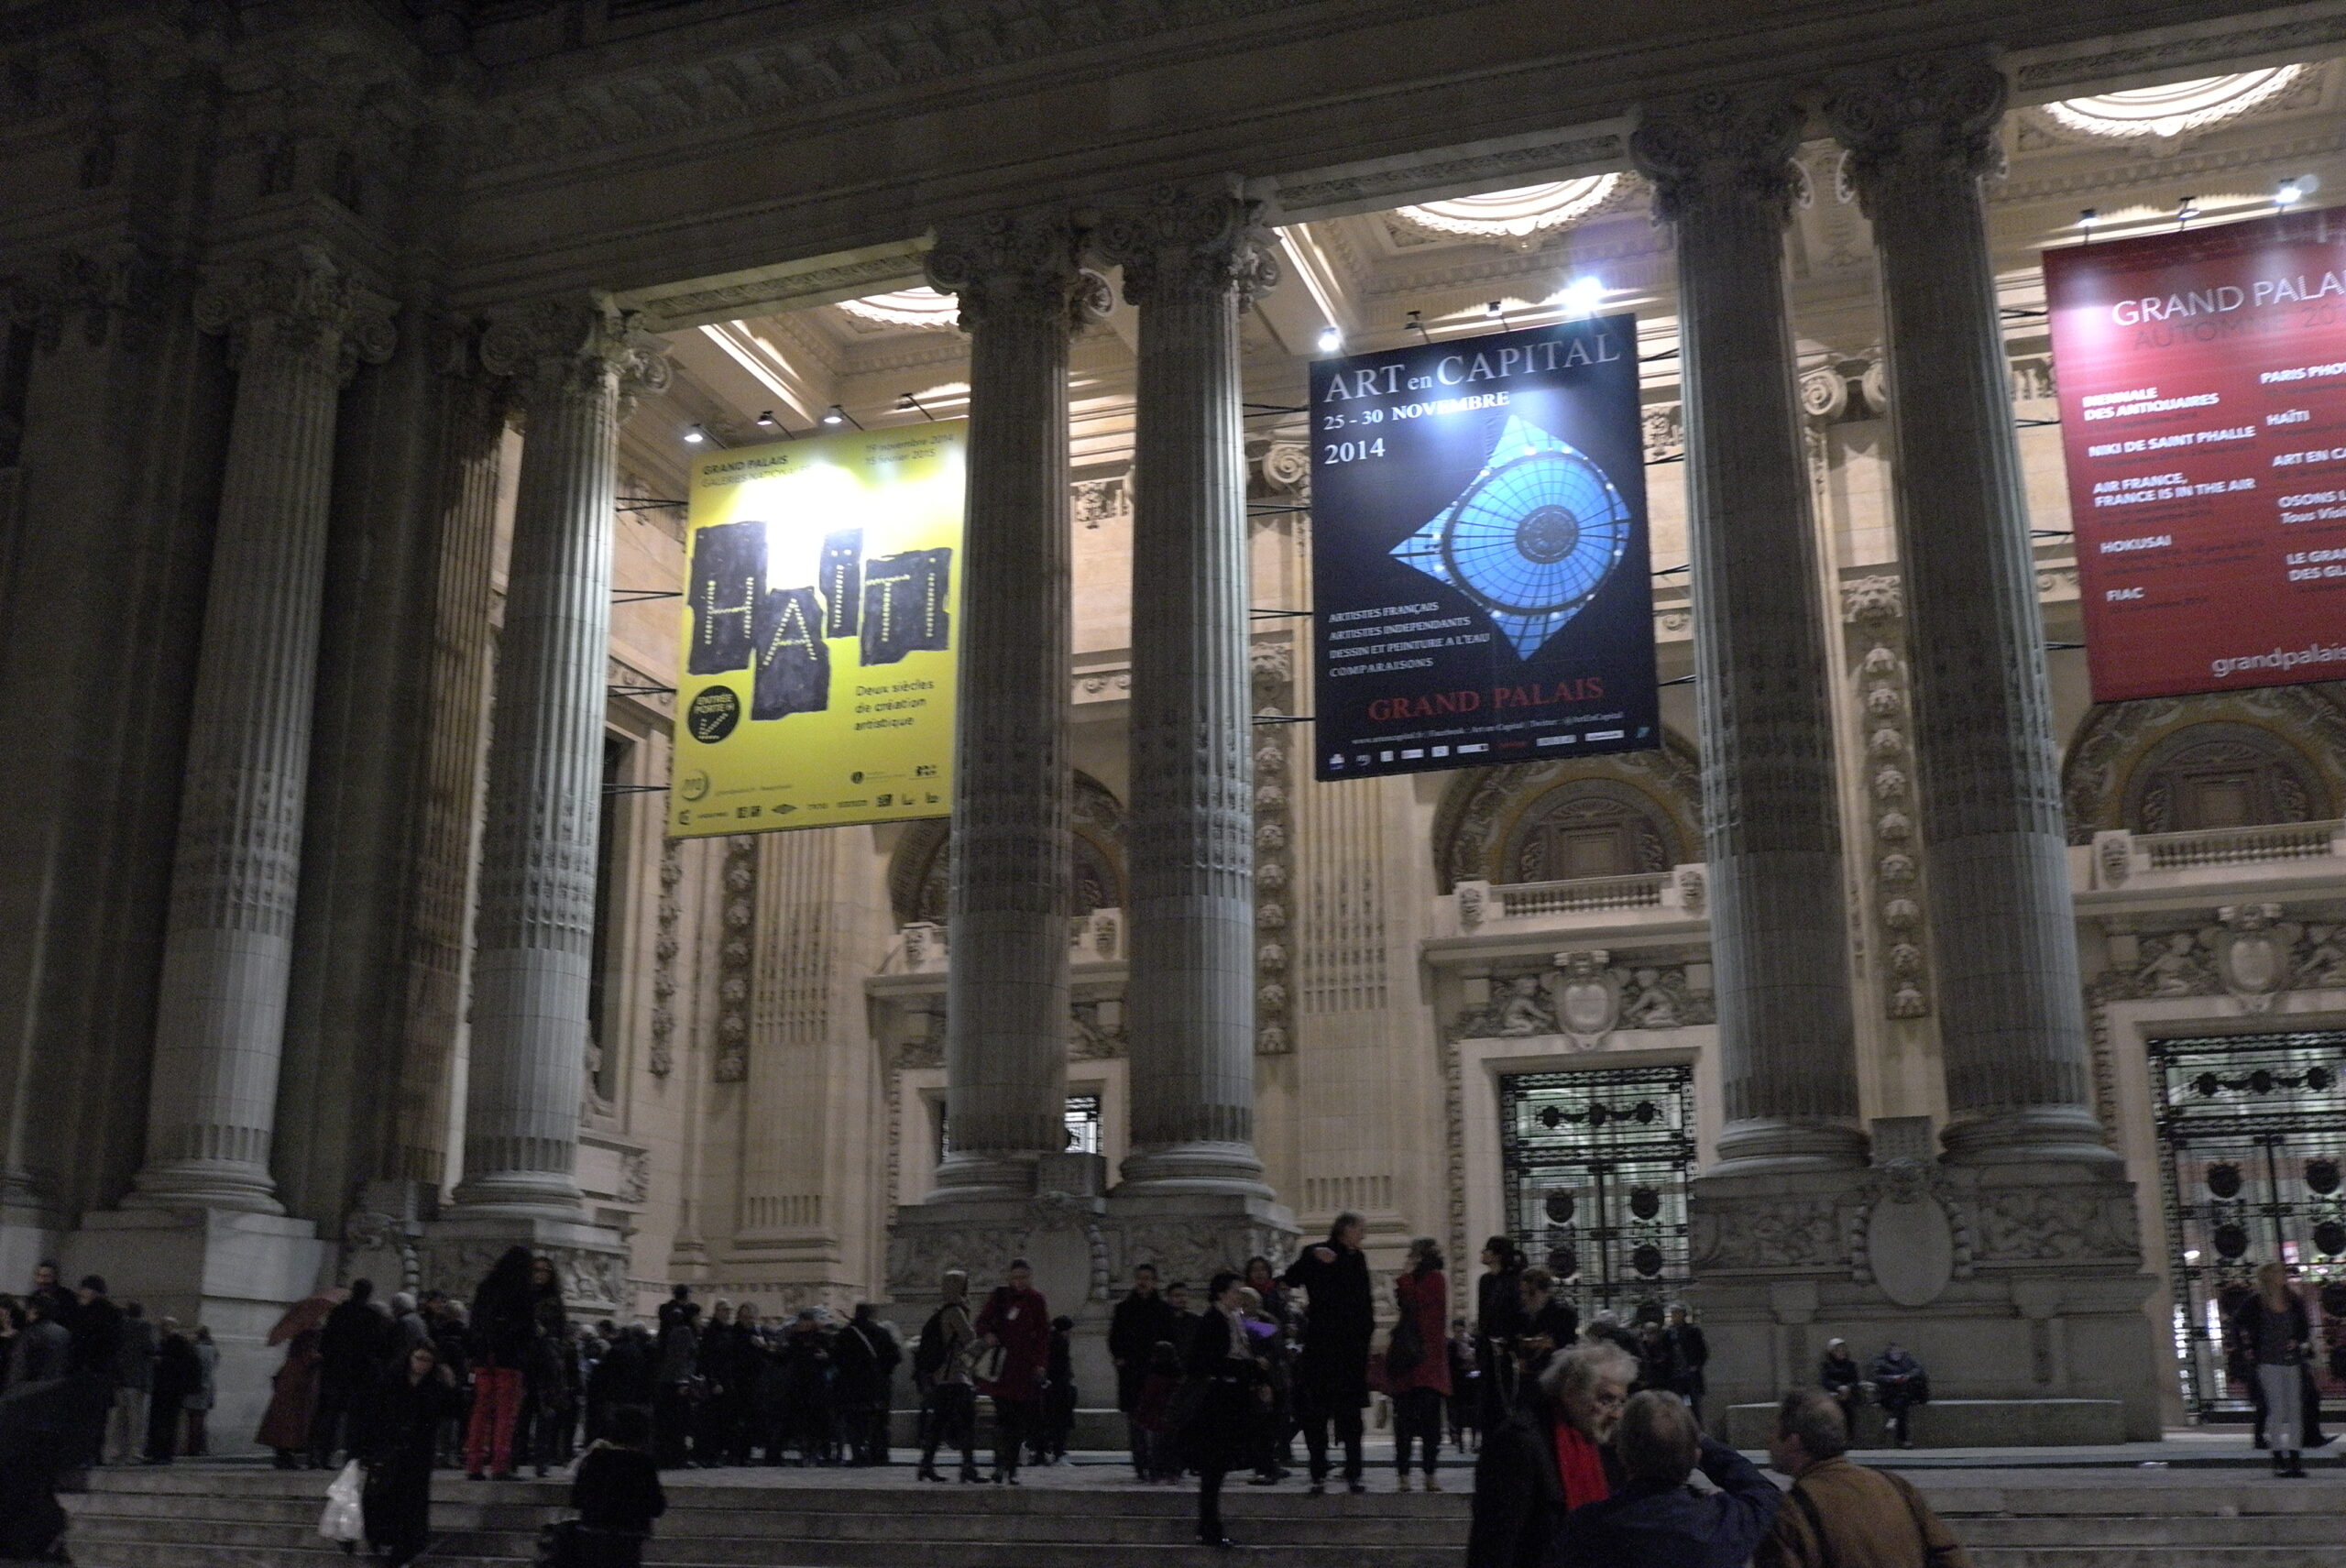 Exhibition Grand Palais « comparaisons » Paris, 2014.